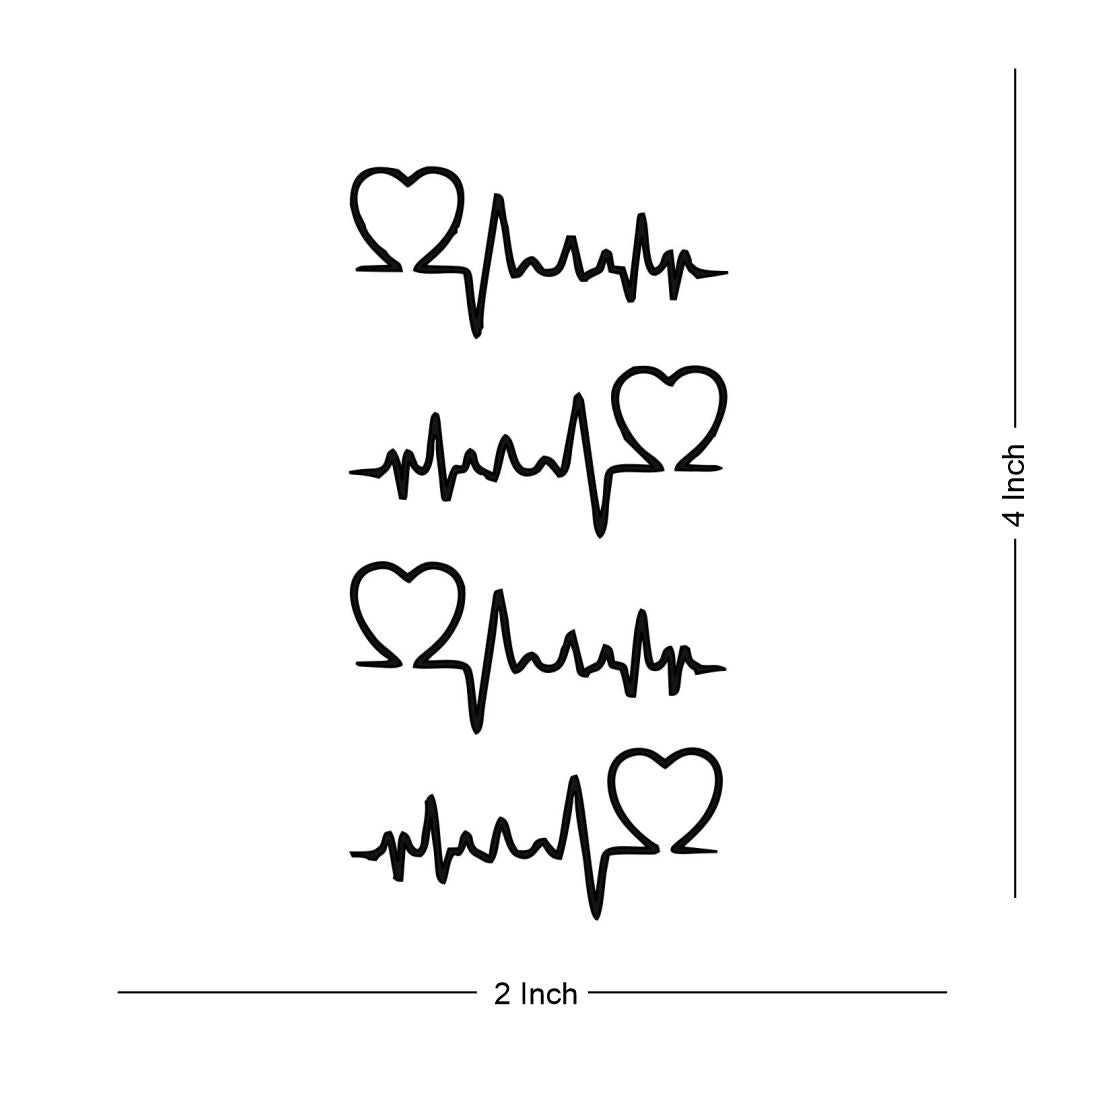 Design a custom heartbeat tattoo by Customtattooart | Fiverr